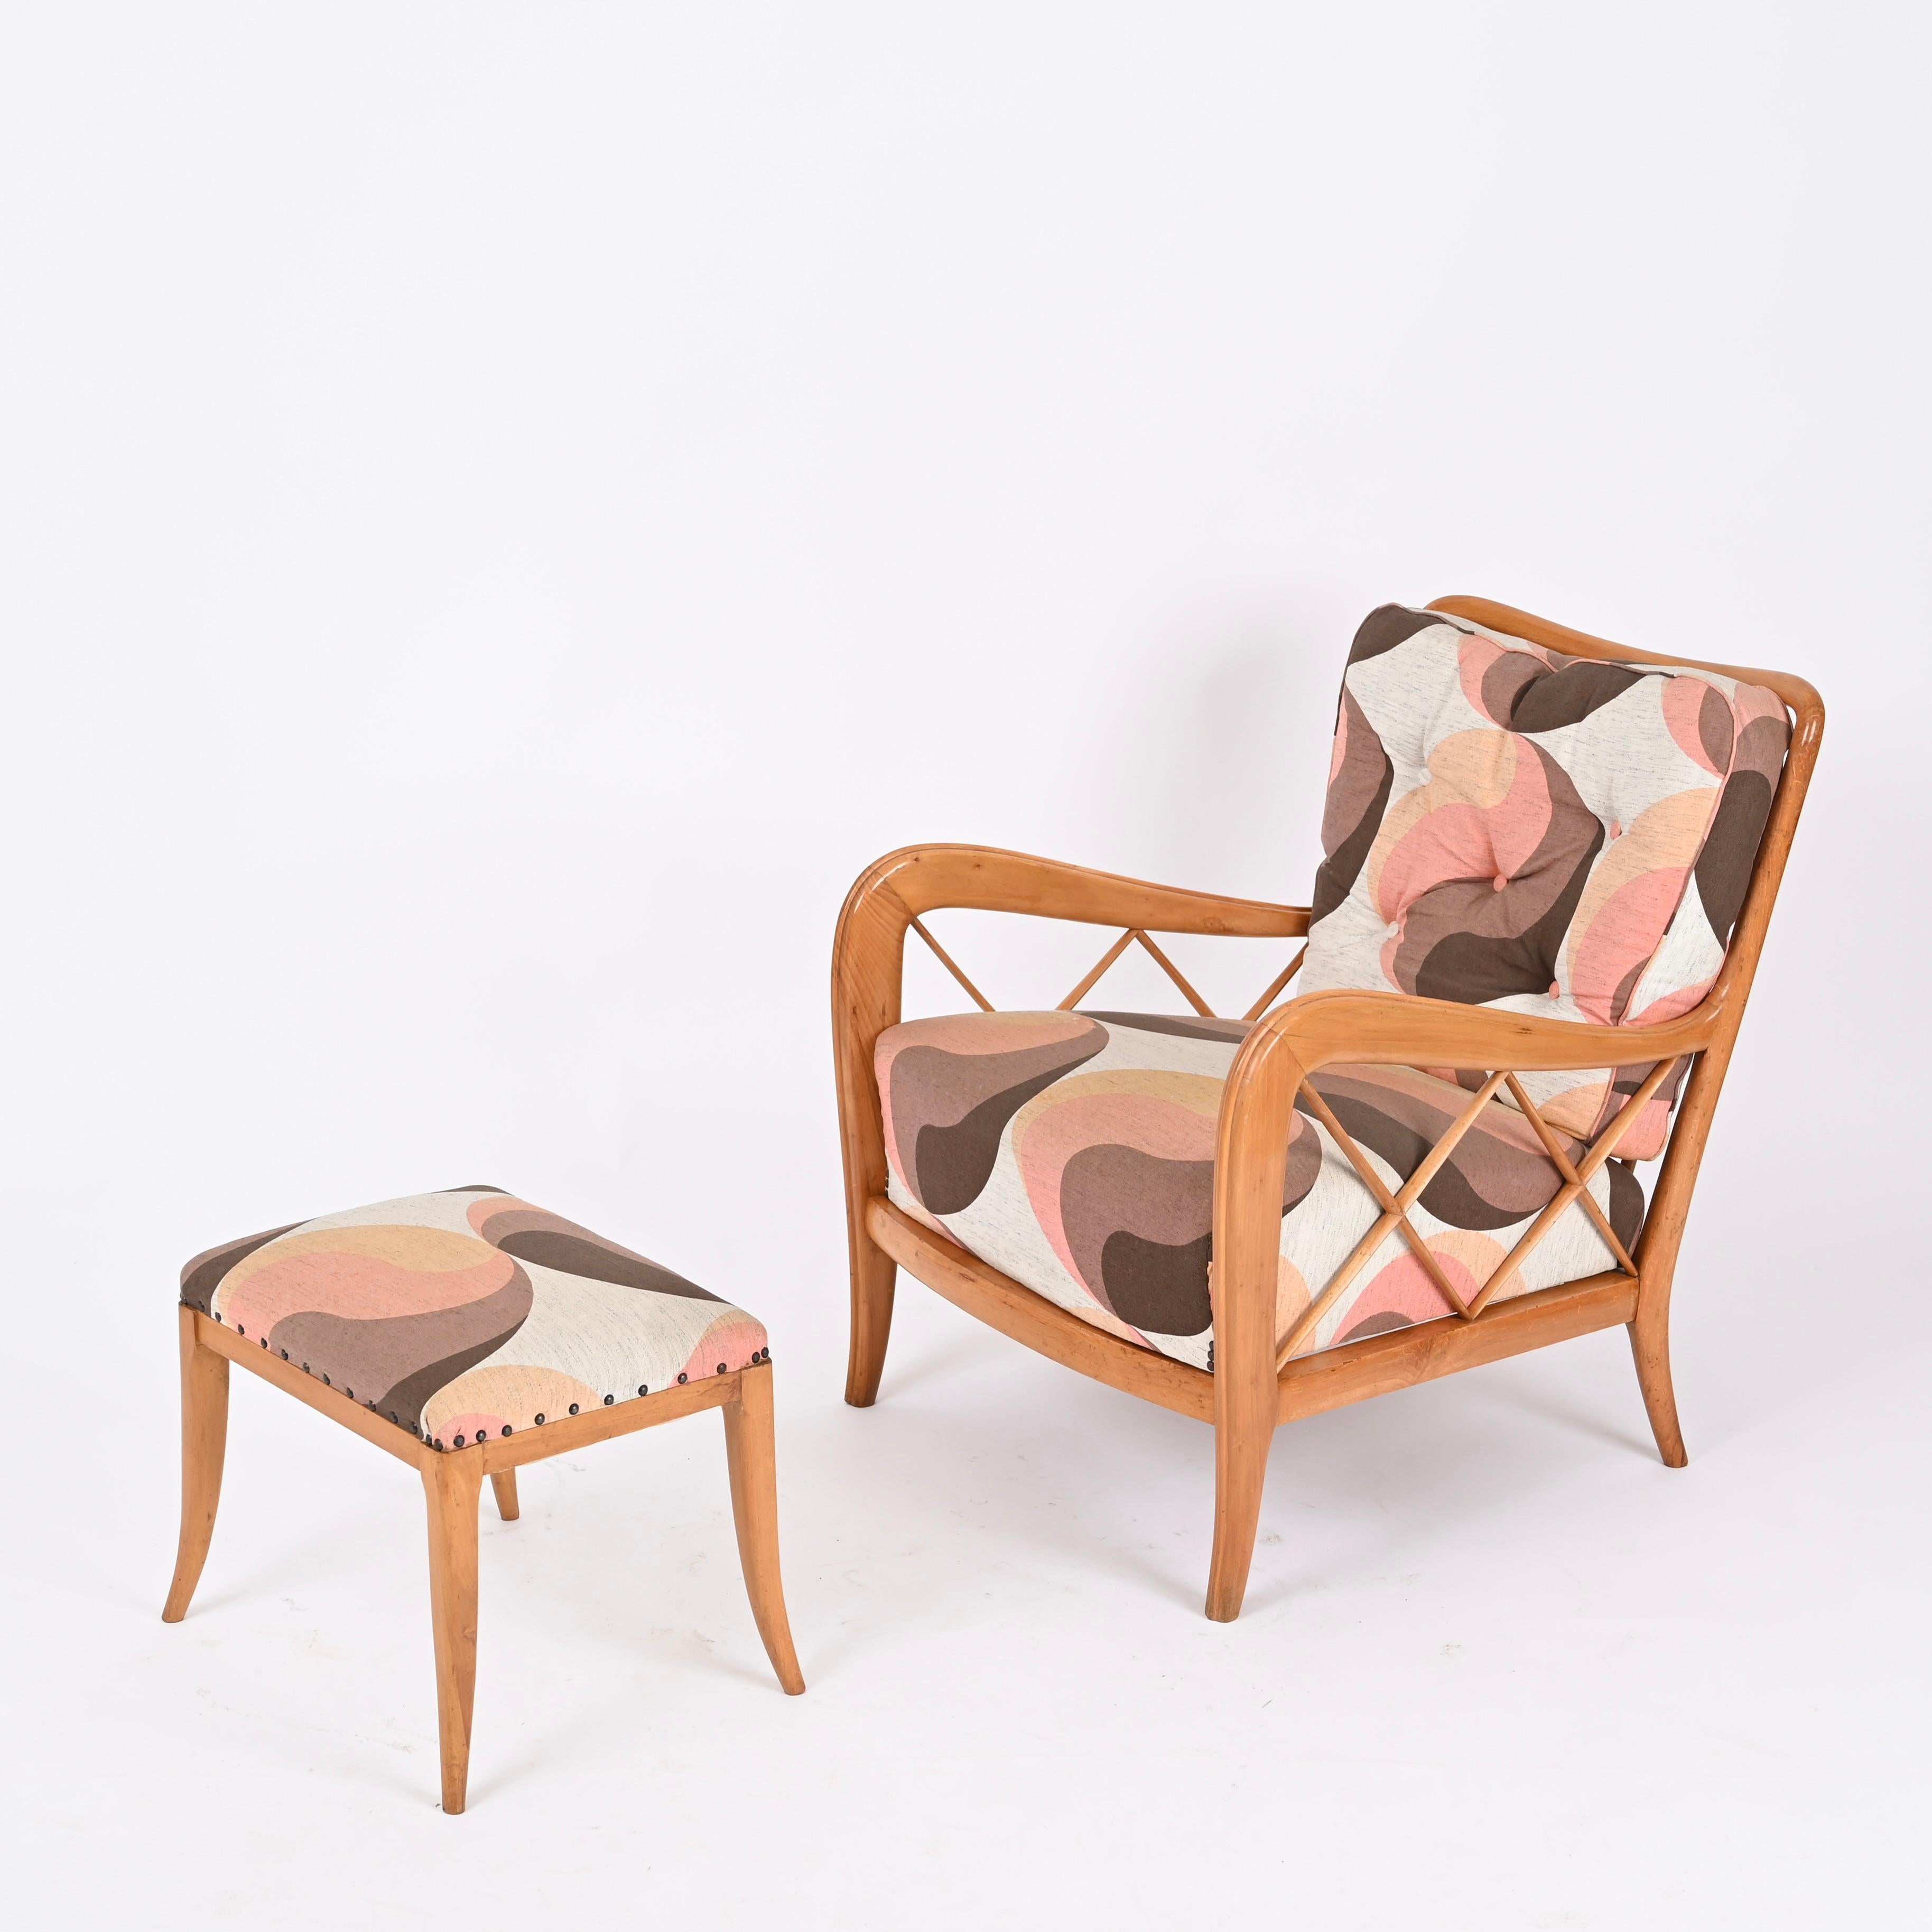 Magnifique fauteuil / chaise longue Mid-Century avec ottoman entièrement réalisé en bois de hêtre. Cette pièce emblématique a été conçue par Paolo Buffa et produite par Brugnoli Cantù en Italie dans les années 1950.

Ce magnifique ensemble